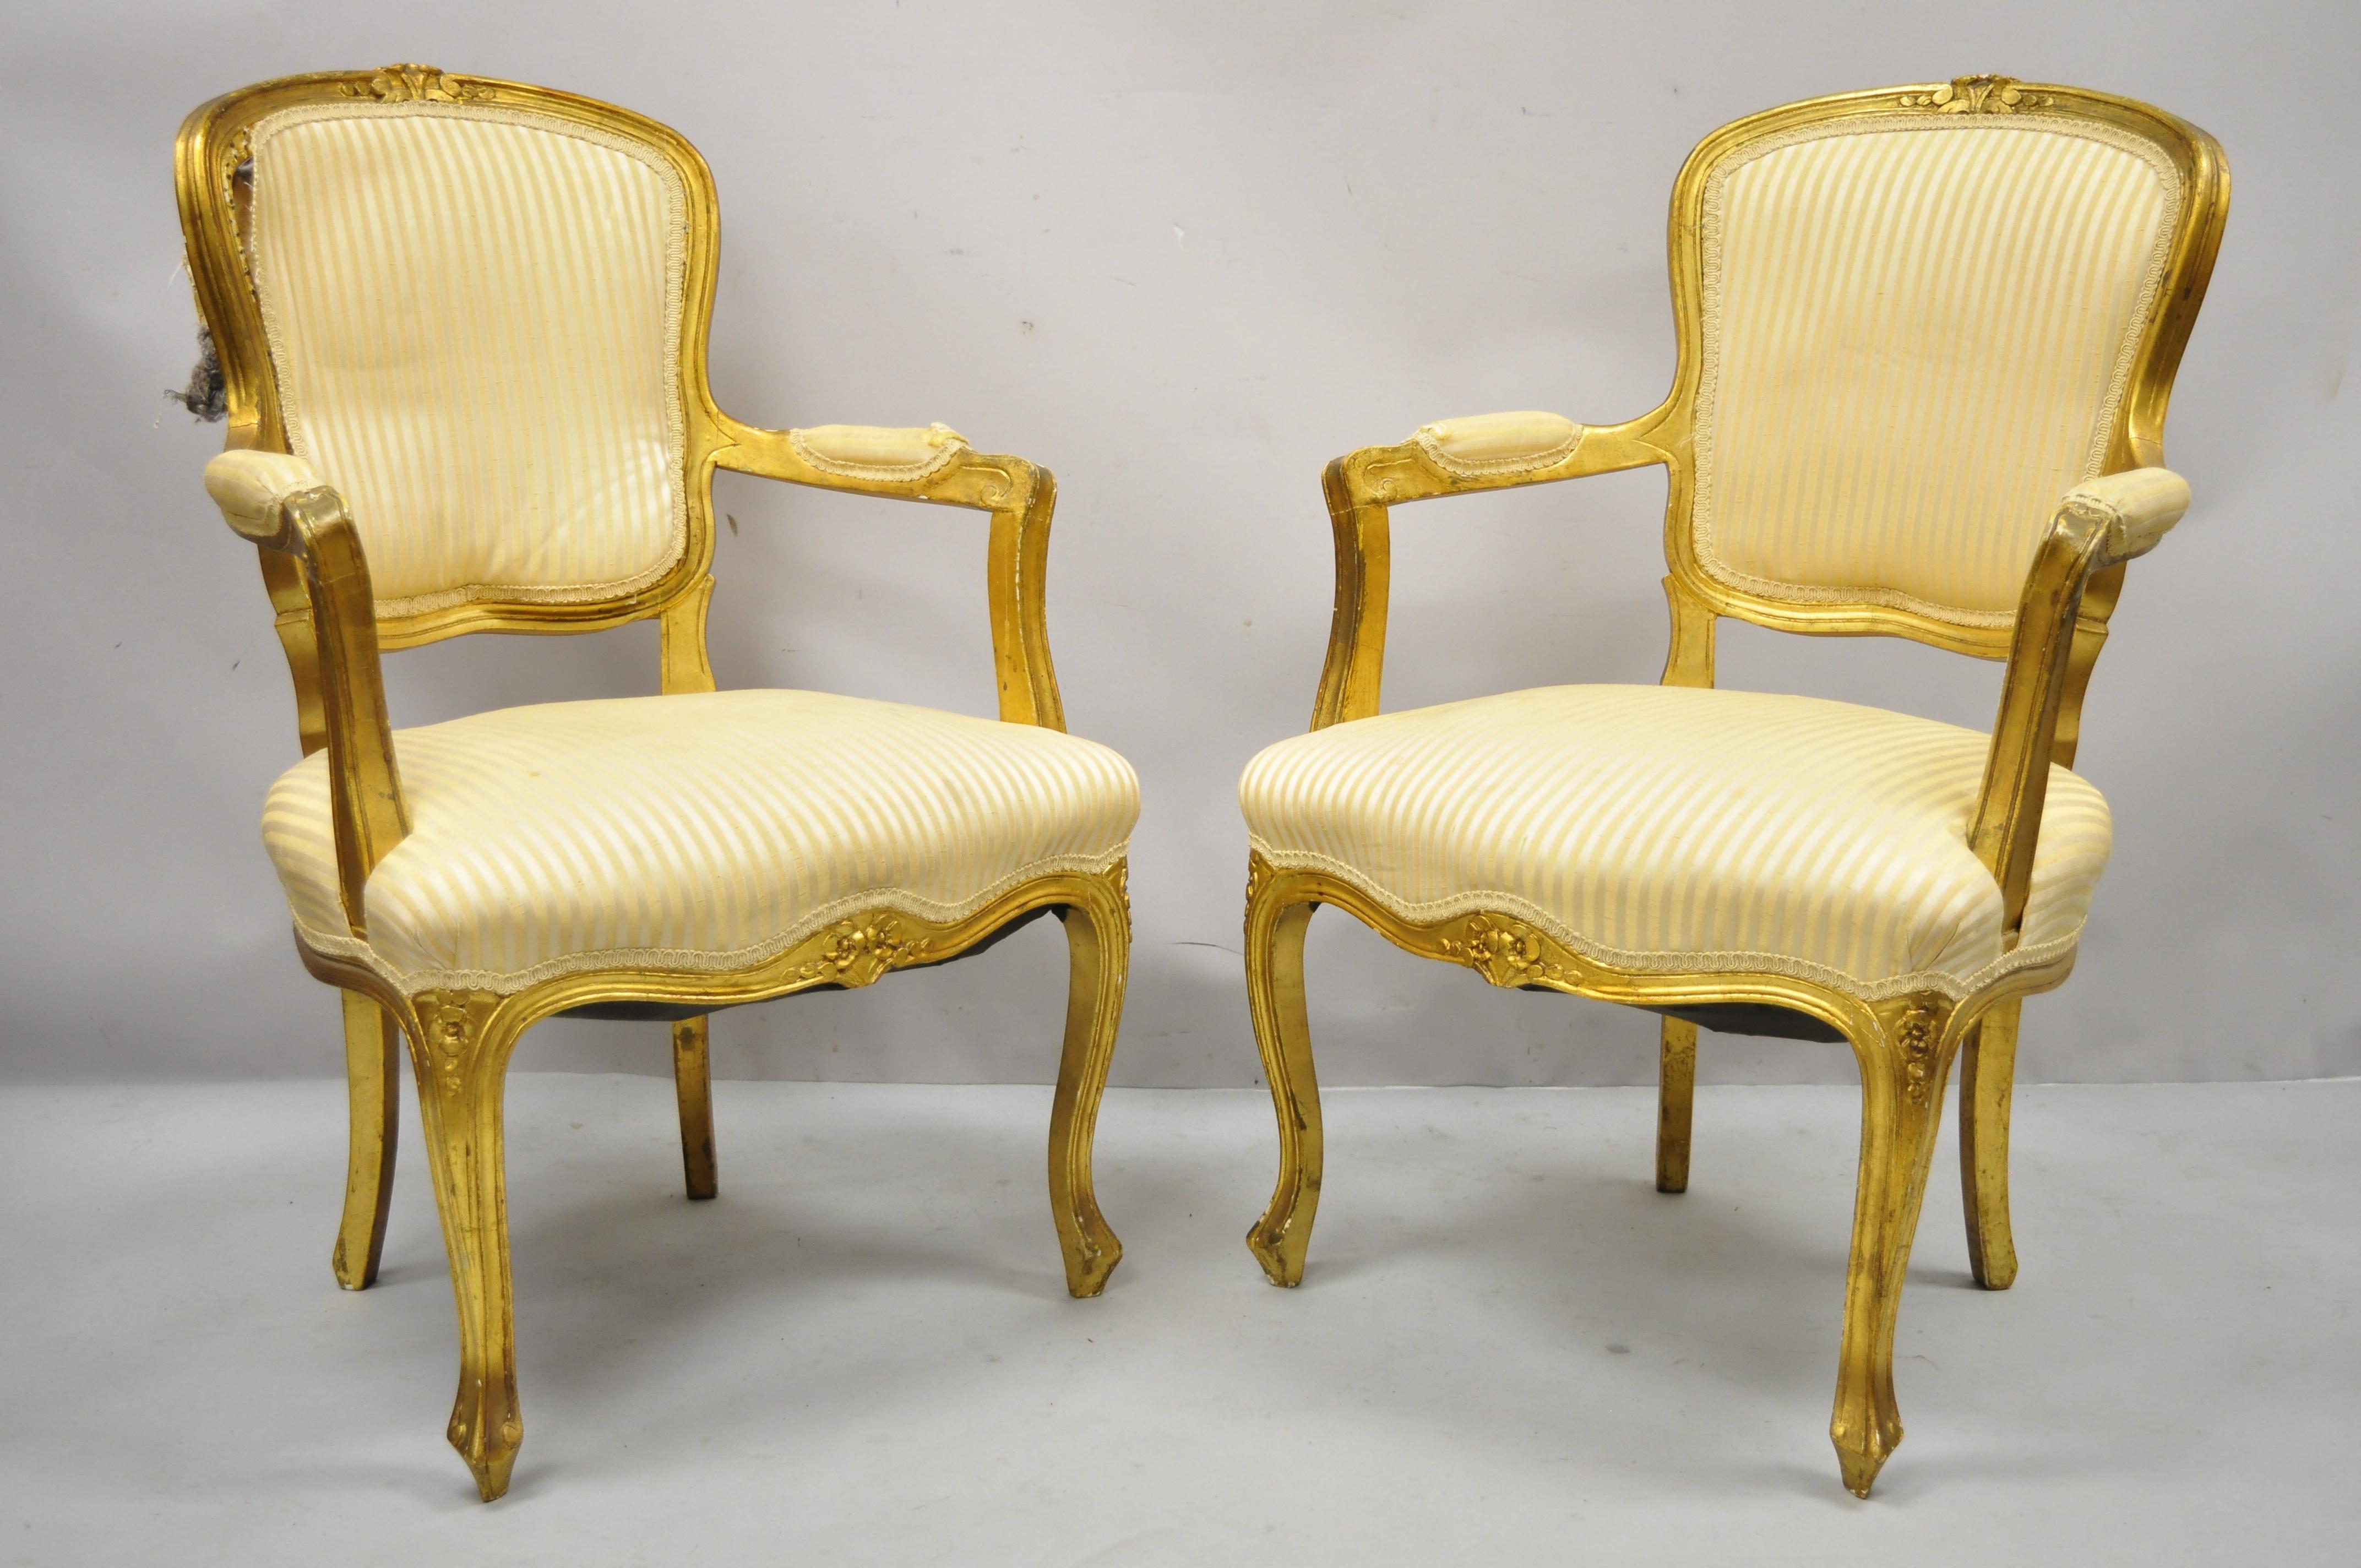 Französische Louis XV Stil Gold vergoldet Fauteuil Arm Stühle zu renovieren DIY-Projekt - ein Paar. Der Artikel zeichnet sich durch eine Massivholzkonstruktion, gepolsterte Armlehnen, goldfarbenes Distressed-Finish, Cabriole-Beine, großen Stil und